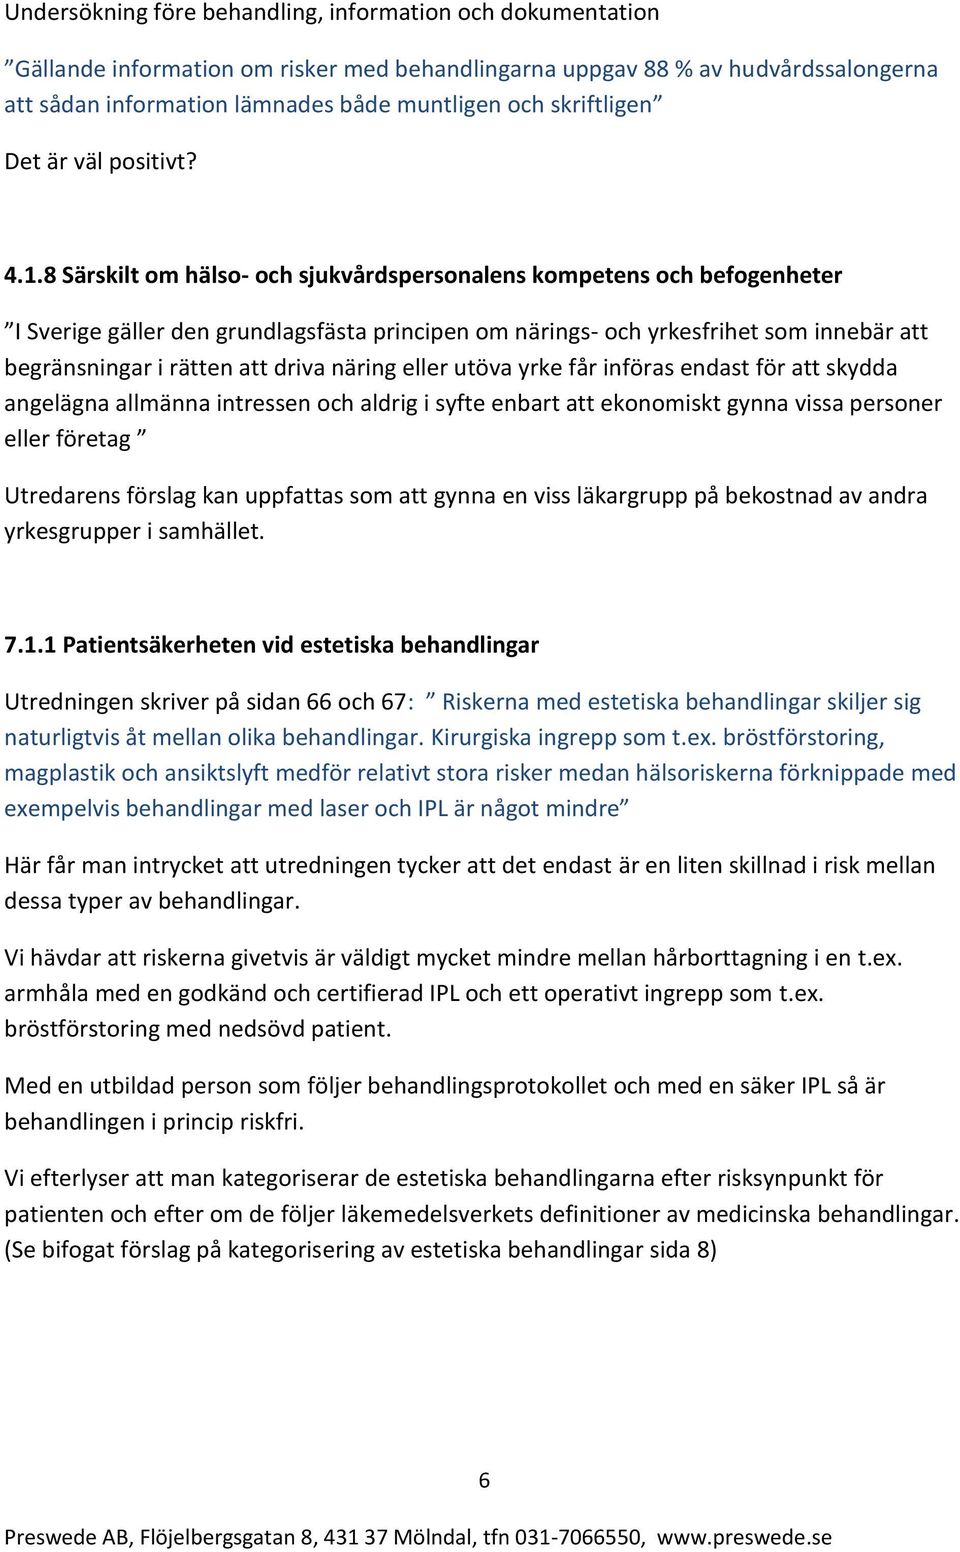 8 Särskilt om hälso- och sjukvårdspersonalens kompetens och befogenheter I Sverige gäller den grundlagsfästa principen om närings- och yrkesfrihet som innebär att begränsningar i rätten att driva